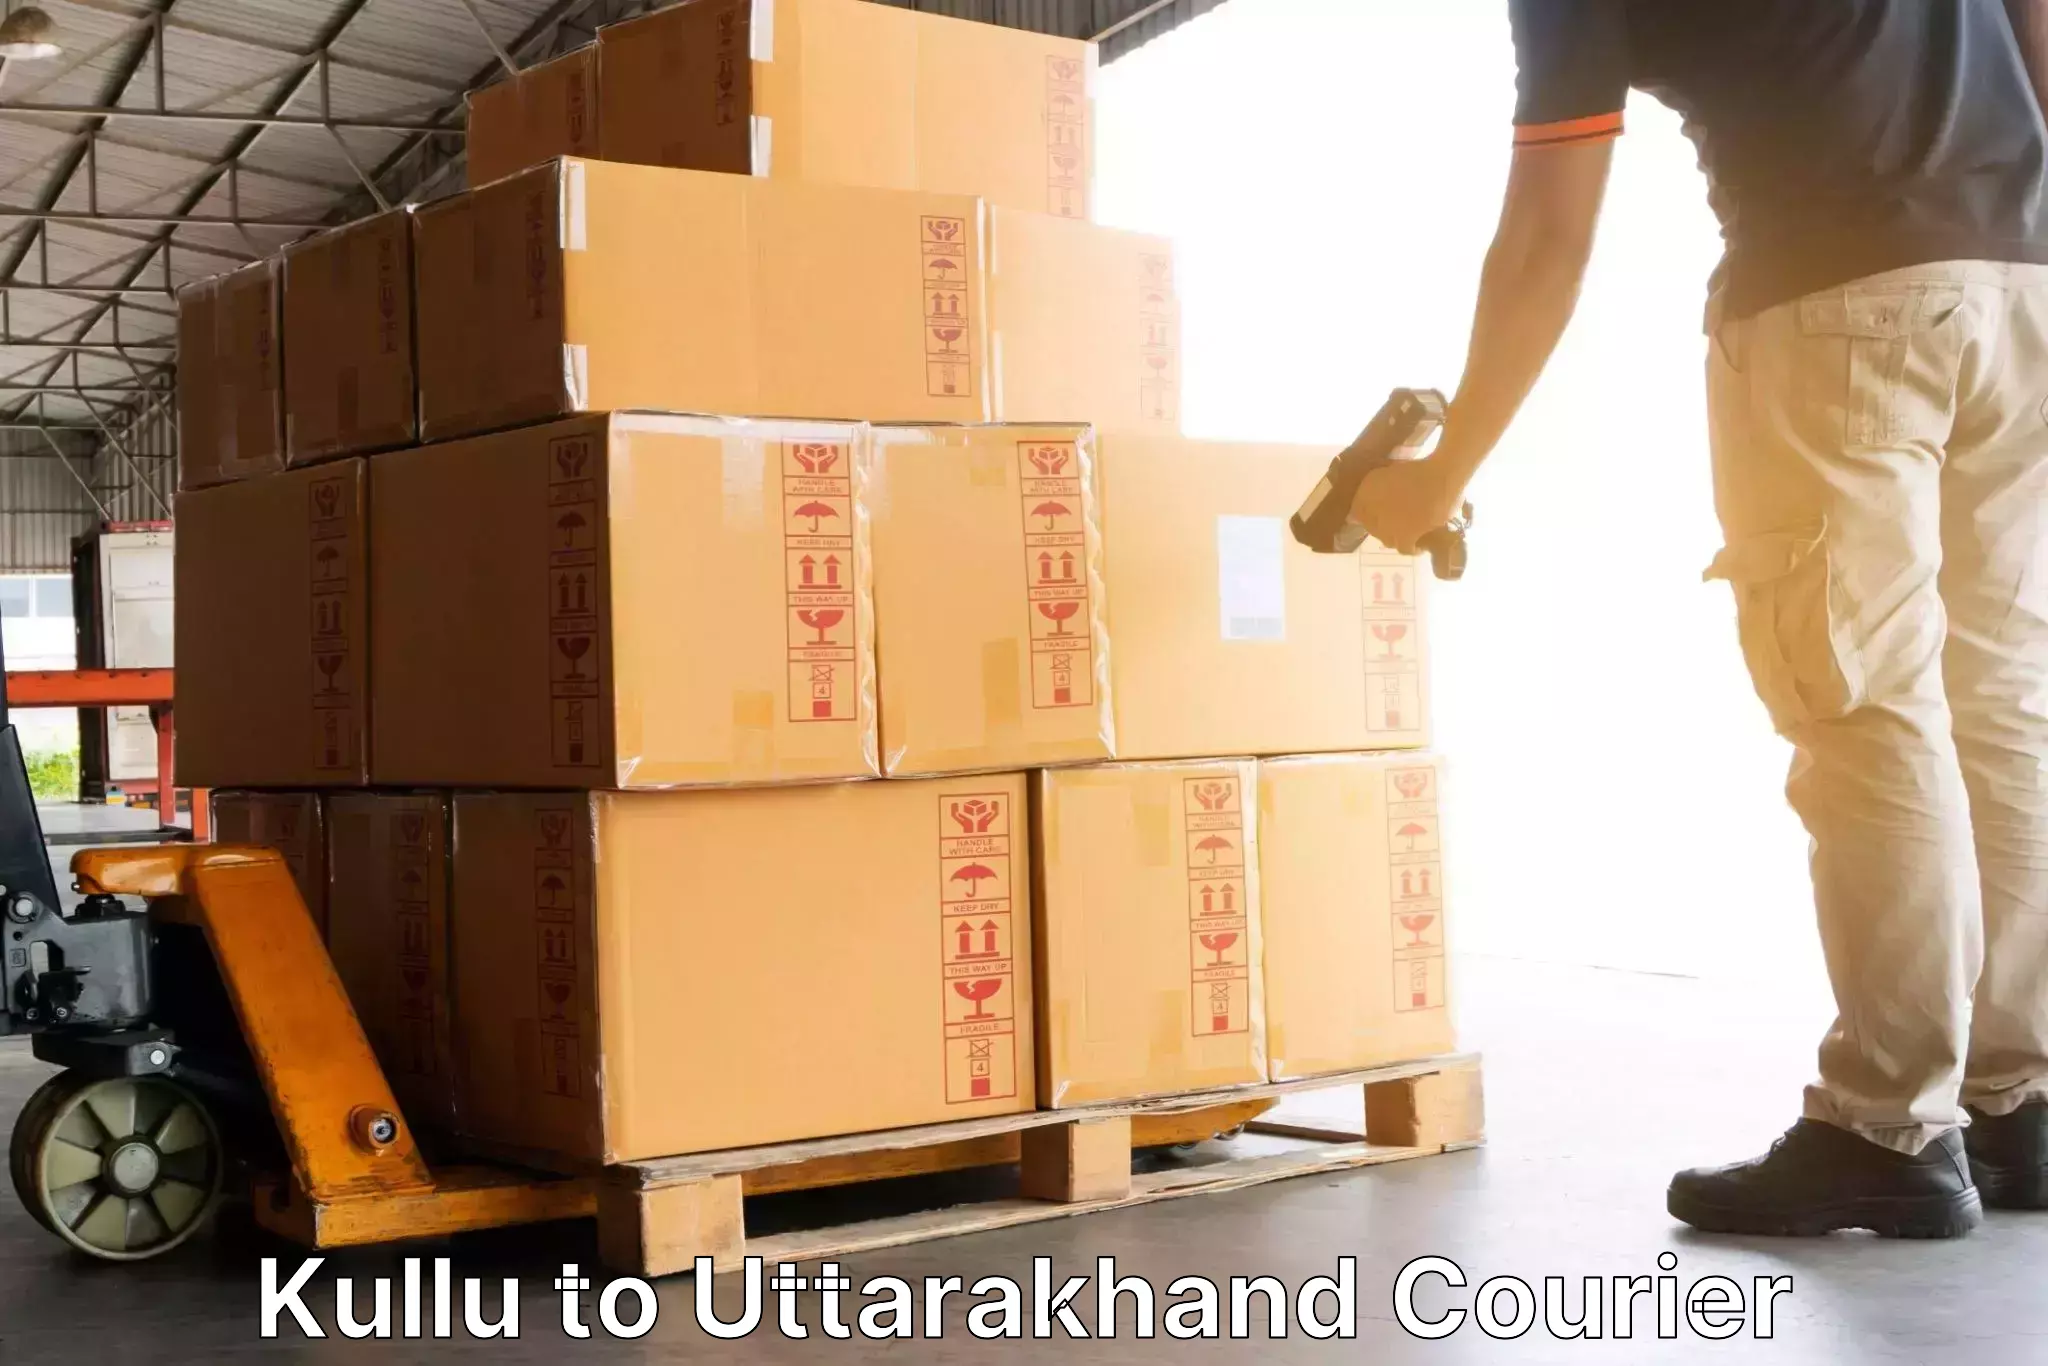 Nationwide shipping capabilities Kullu to Uttarakhand